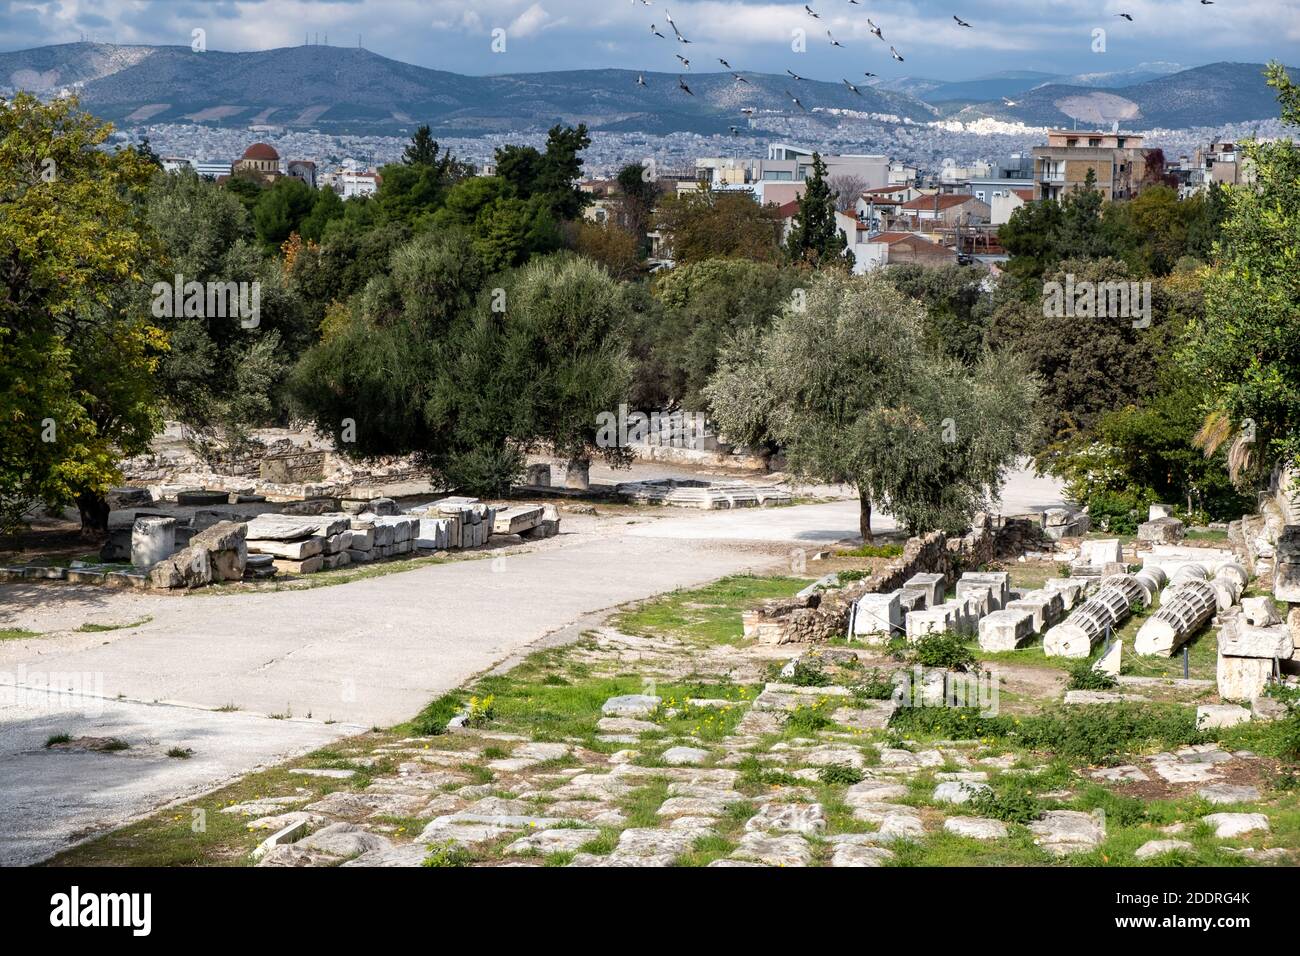 Athen Griechenland, römische Agora. Alte Ruinen, Marmorsäulen auf dem Boden gestapelt, Athen Stadtbild und bewölkten Himmel Hintergrund Stockfoto